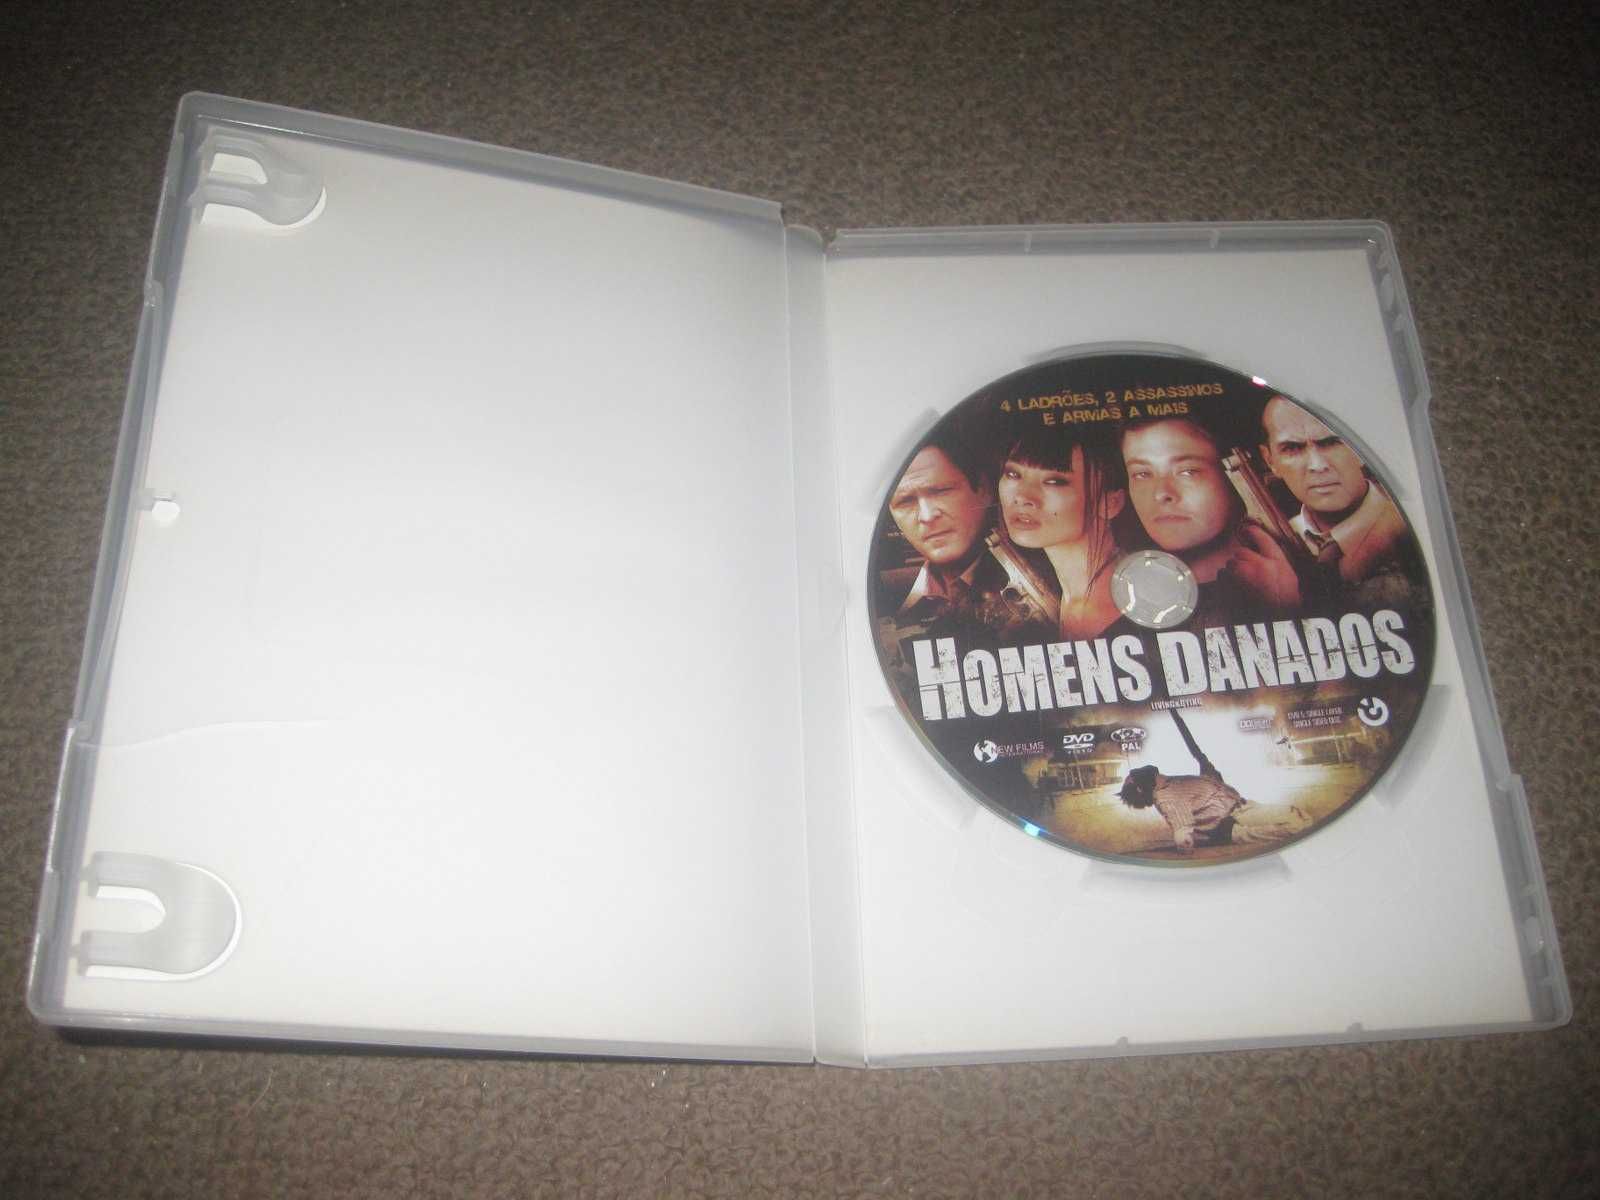 DVD "Homens Danados" com Edward Furlong